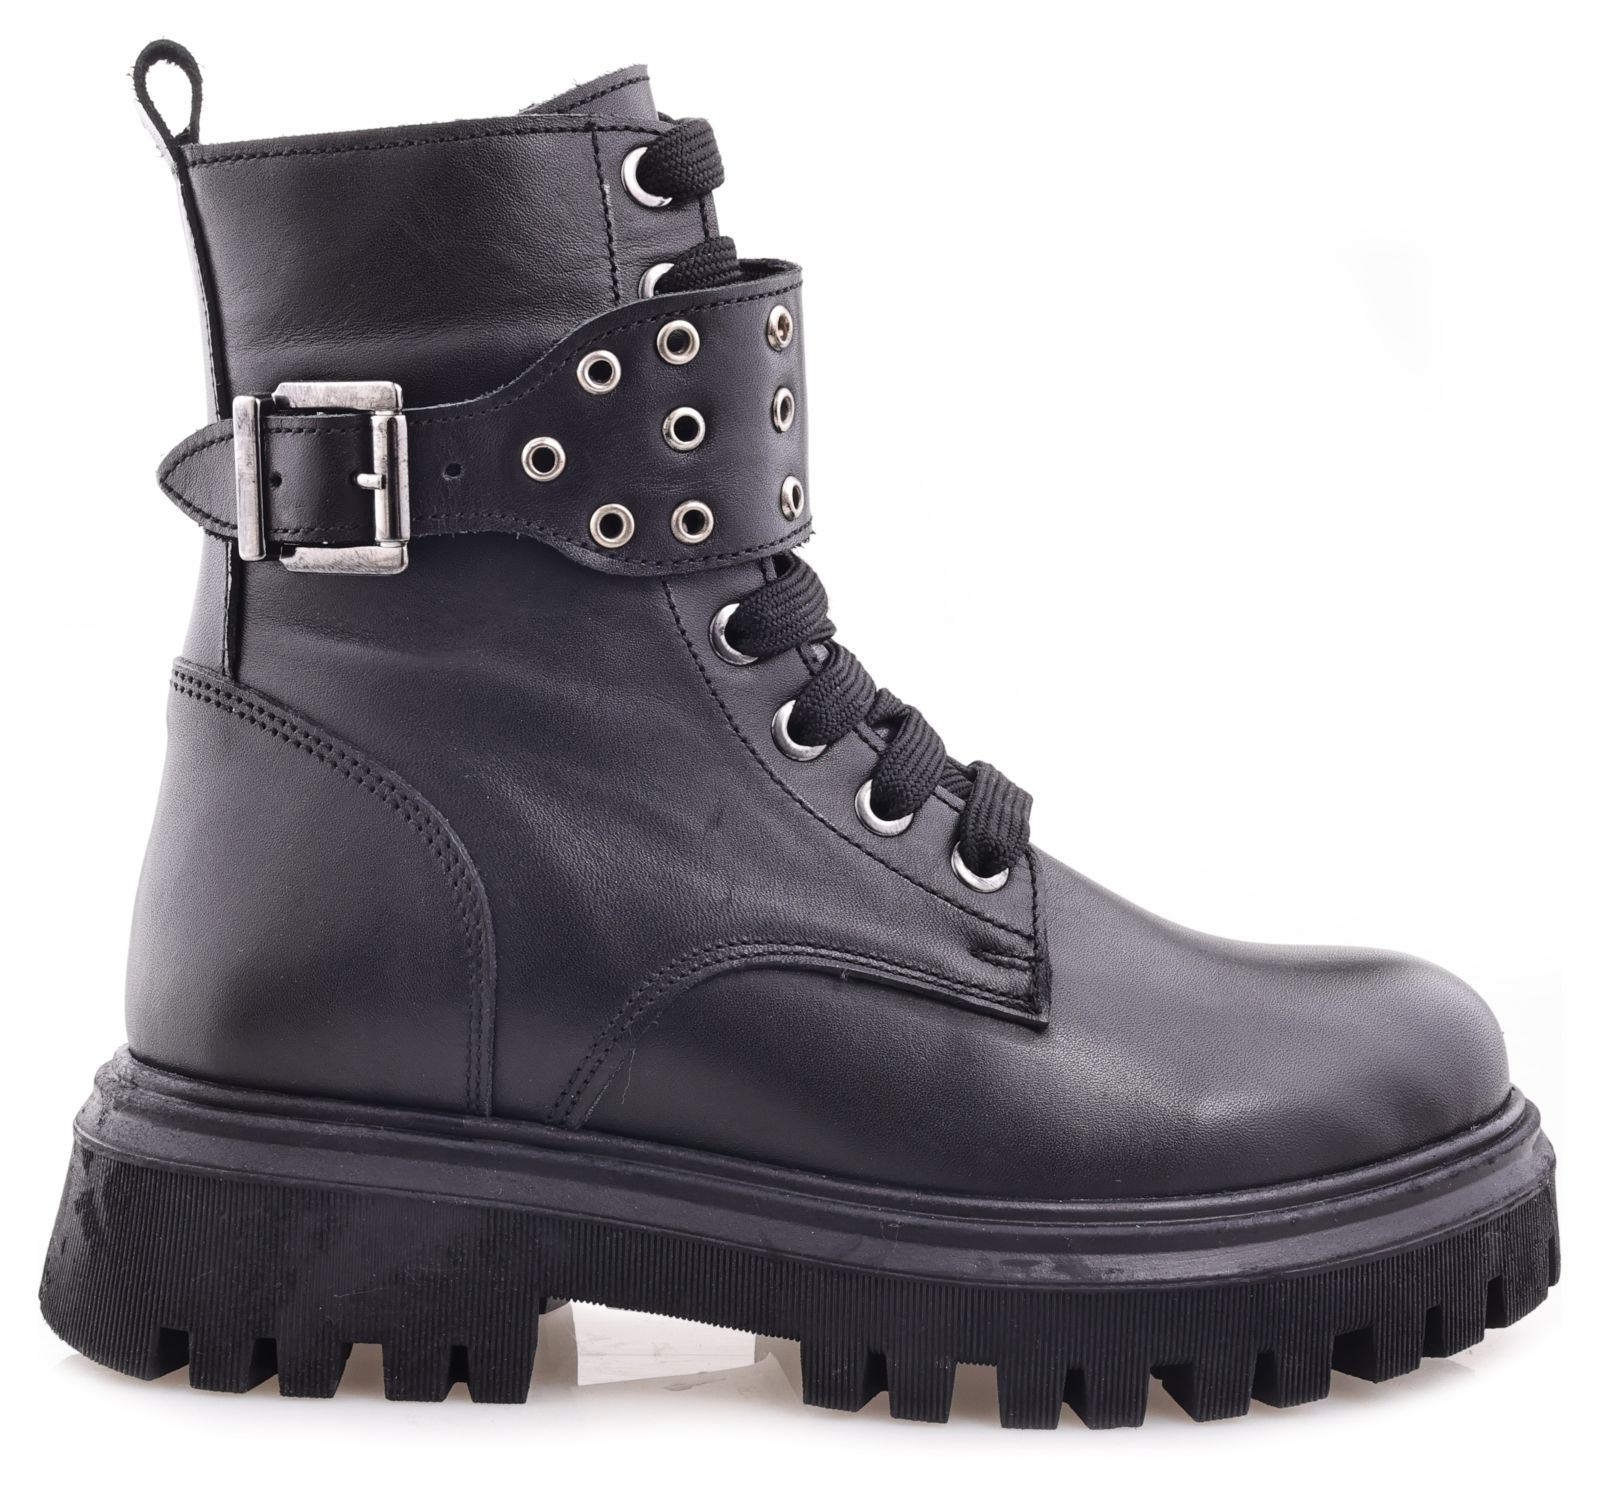 Ботинки Minimen для девочек, чёрные, размер 31, 2666-44-23B-02 2666 боланьо р